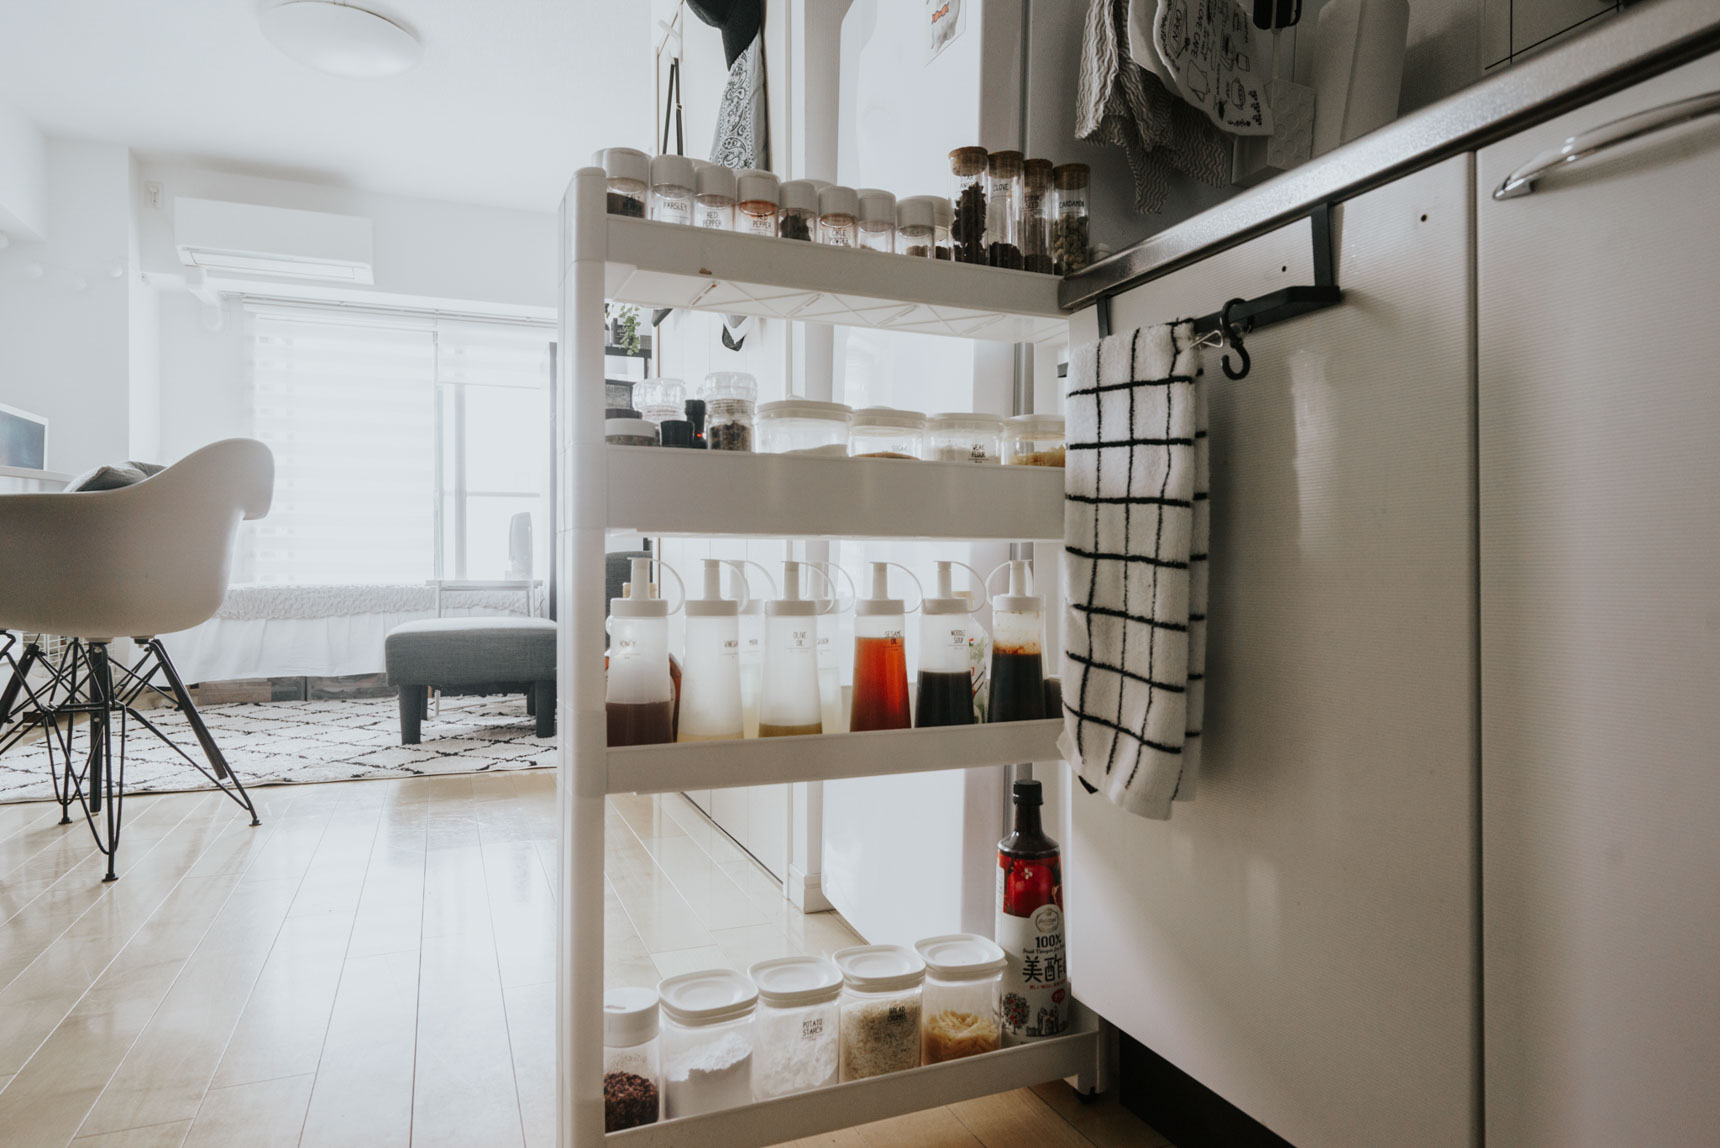 冷蔵庫とキッチンとの間などにスペースがあれば、すきま収納用のラックもおすすめです。こちらのお部屋で使用されているのは、ニトリのスパイスラック。容器もすべて100均で購入した白のケースに入れ替え、統一感を出しています。